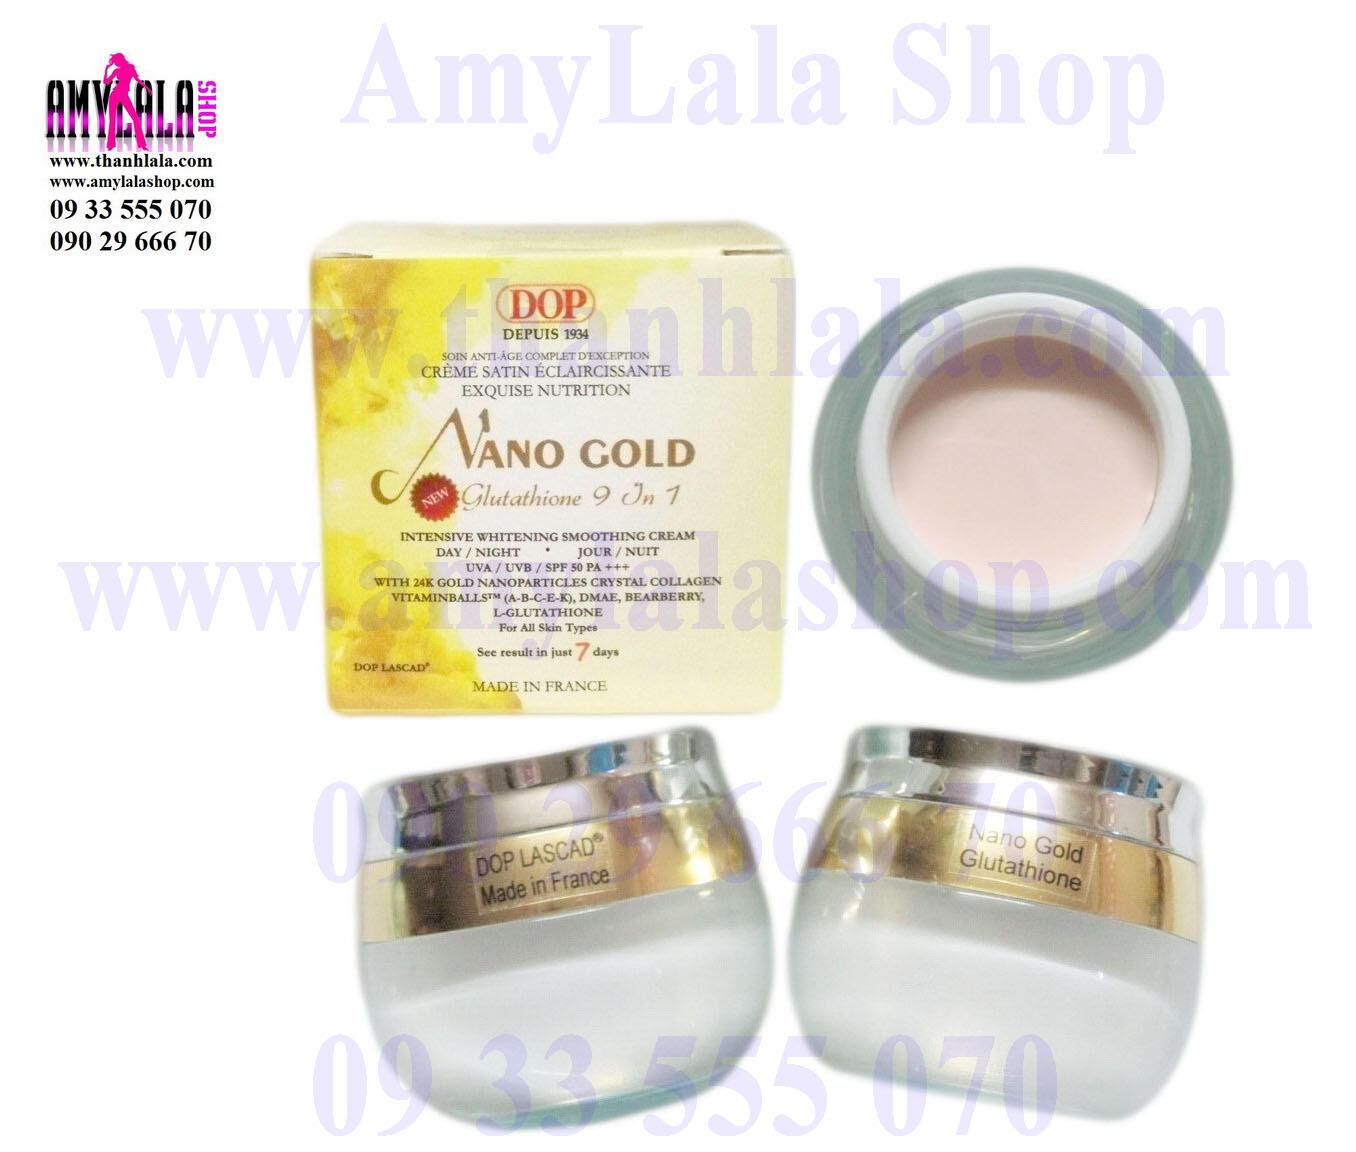 Kem mặt (60g) hạt vàng 24k Dop Lascad® Nano Gold Glutathione 9in1 siêu trắng cao cấp - 0933555070 -